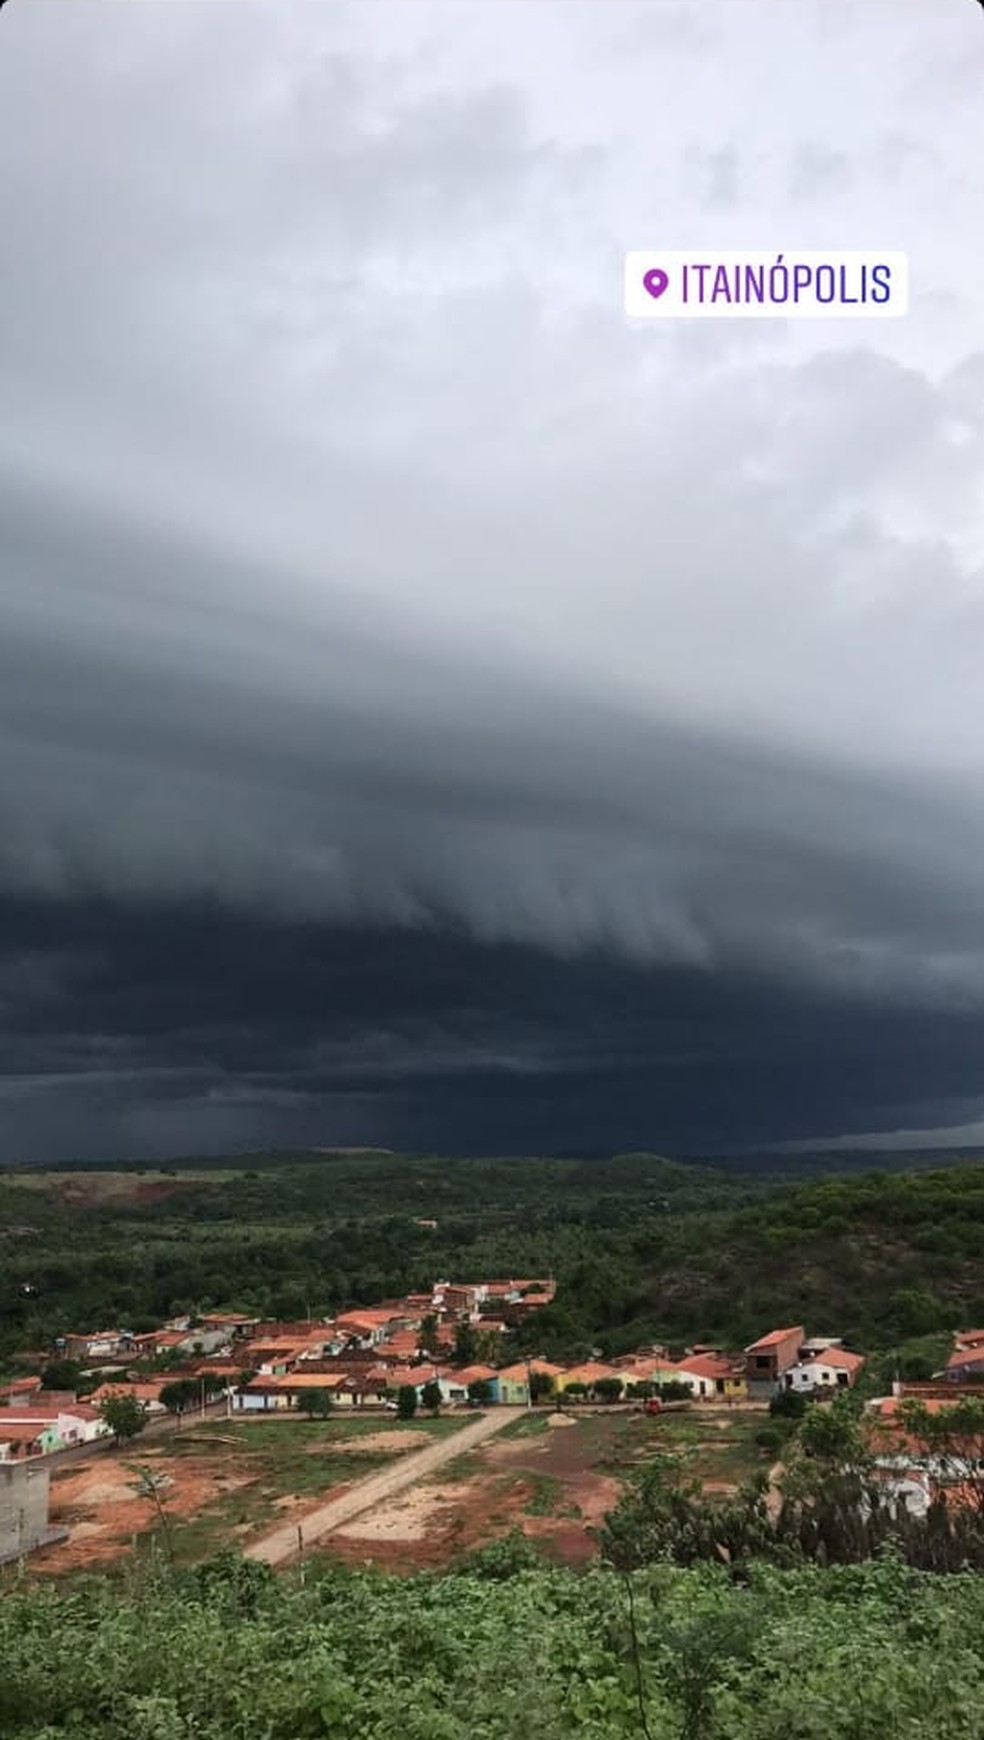 Nuvem prateleira é registrado na cidade de Itainópolis  — Foto: Reprodução/Redes sociais